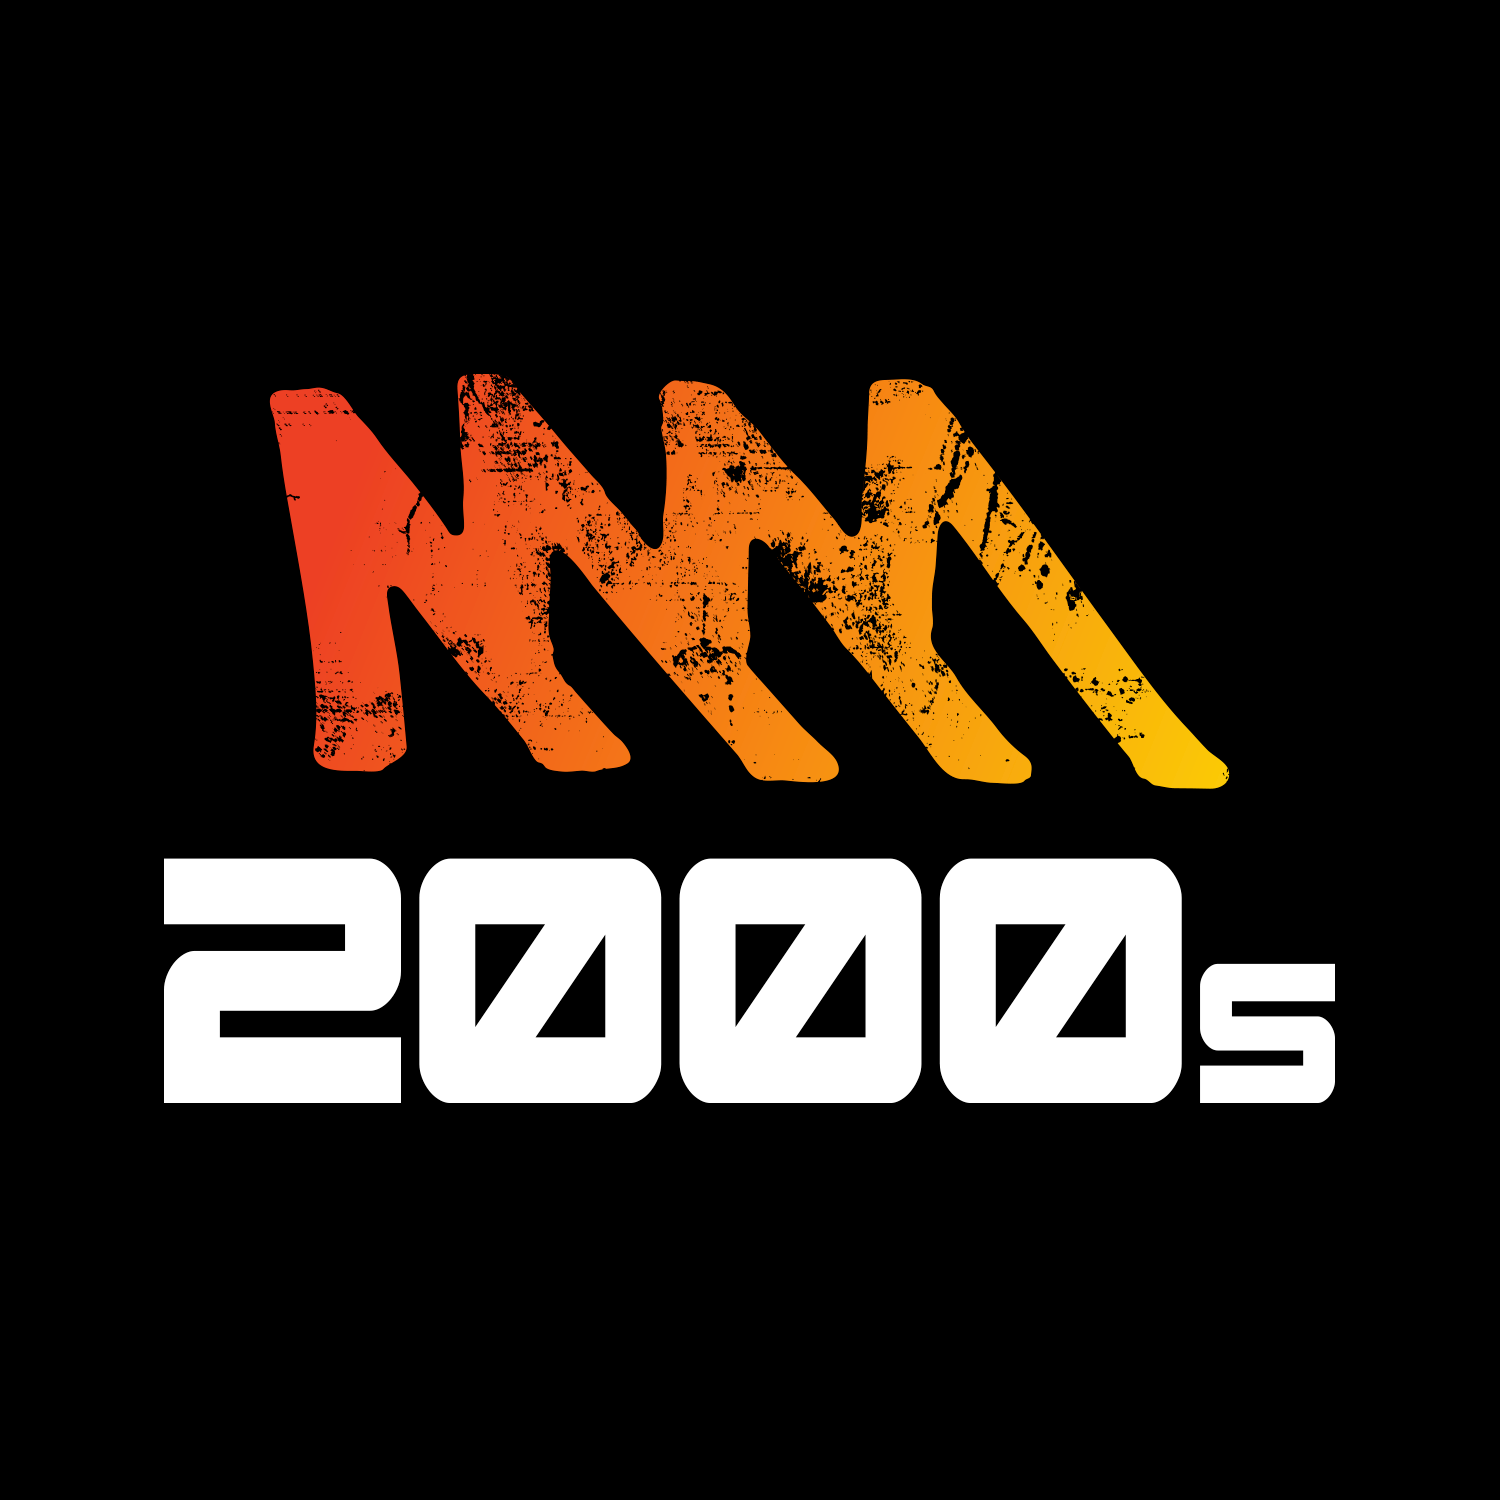 Triple M 2000s logo